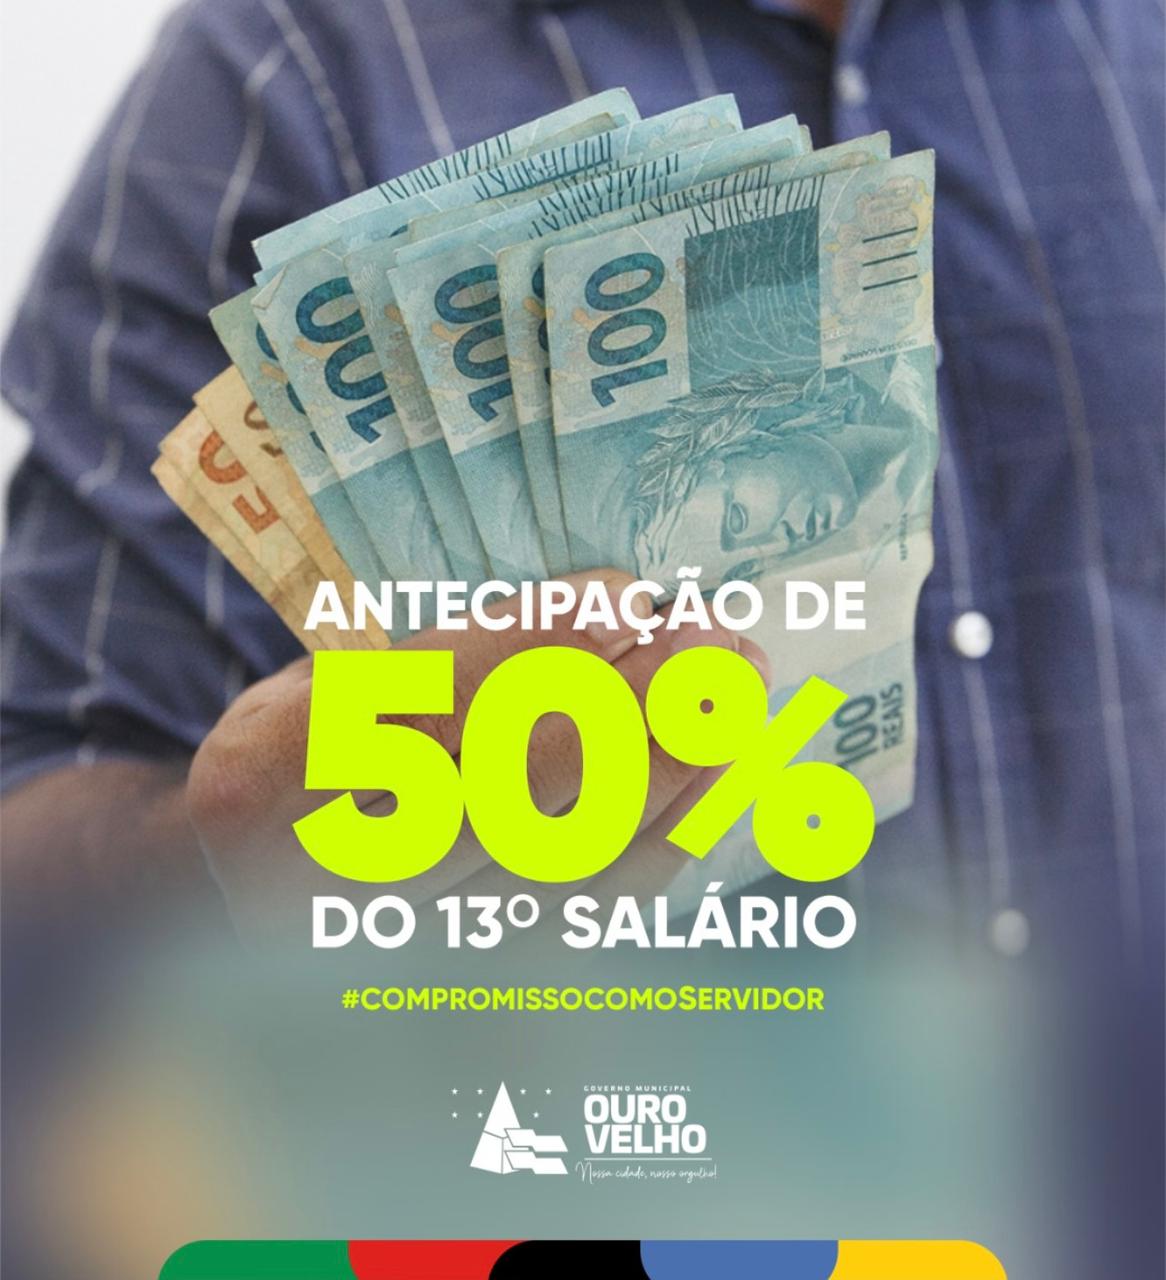 You are currently viewing Prefeitura de Ouro Velho já pagou 1ªparcela do 13° salário dos servidores